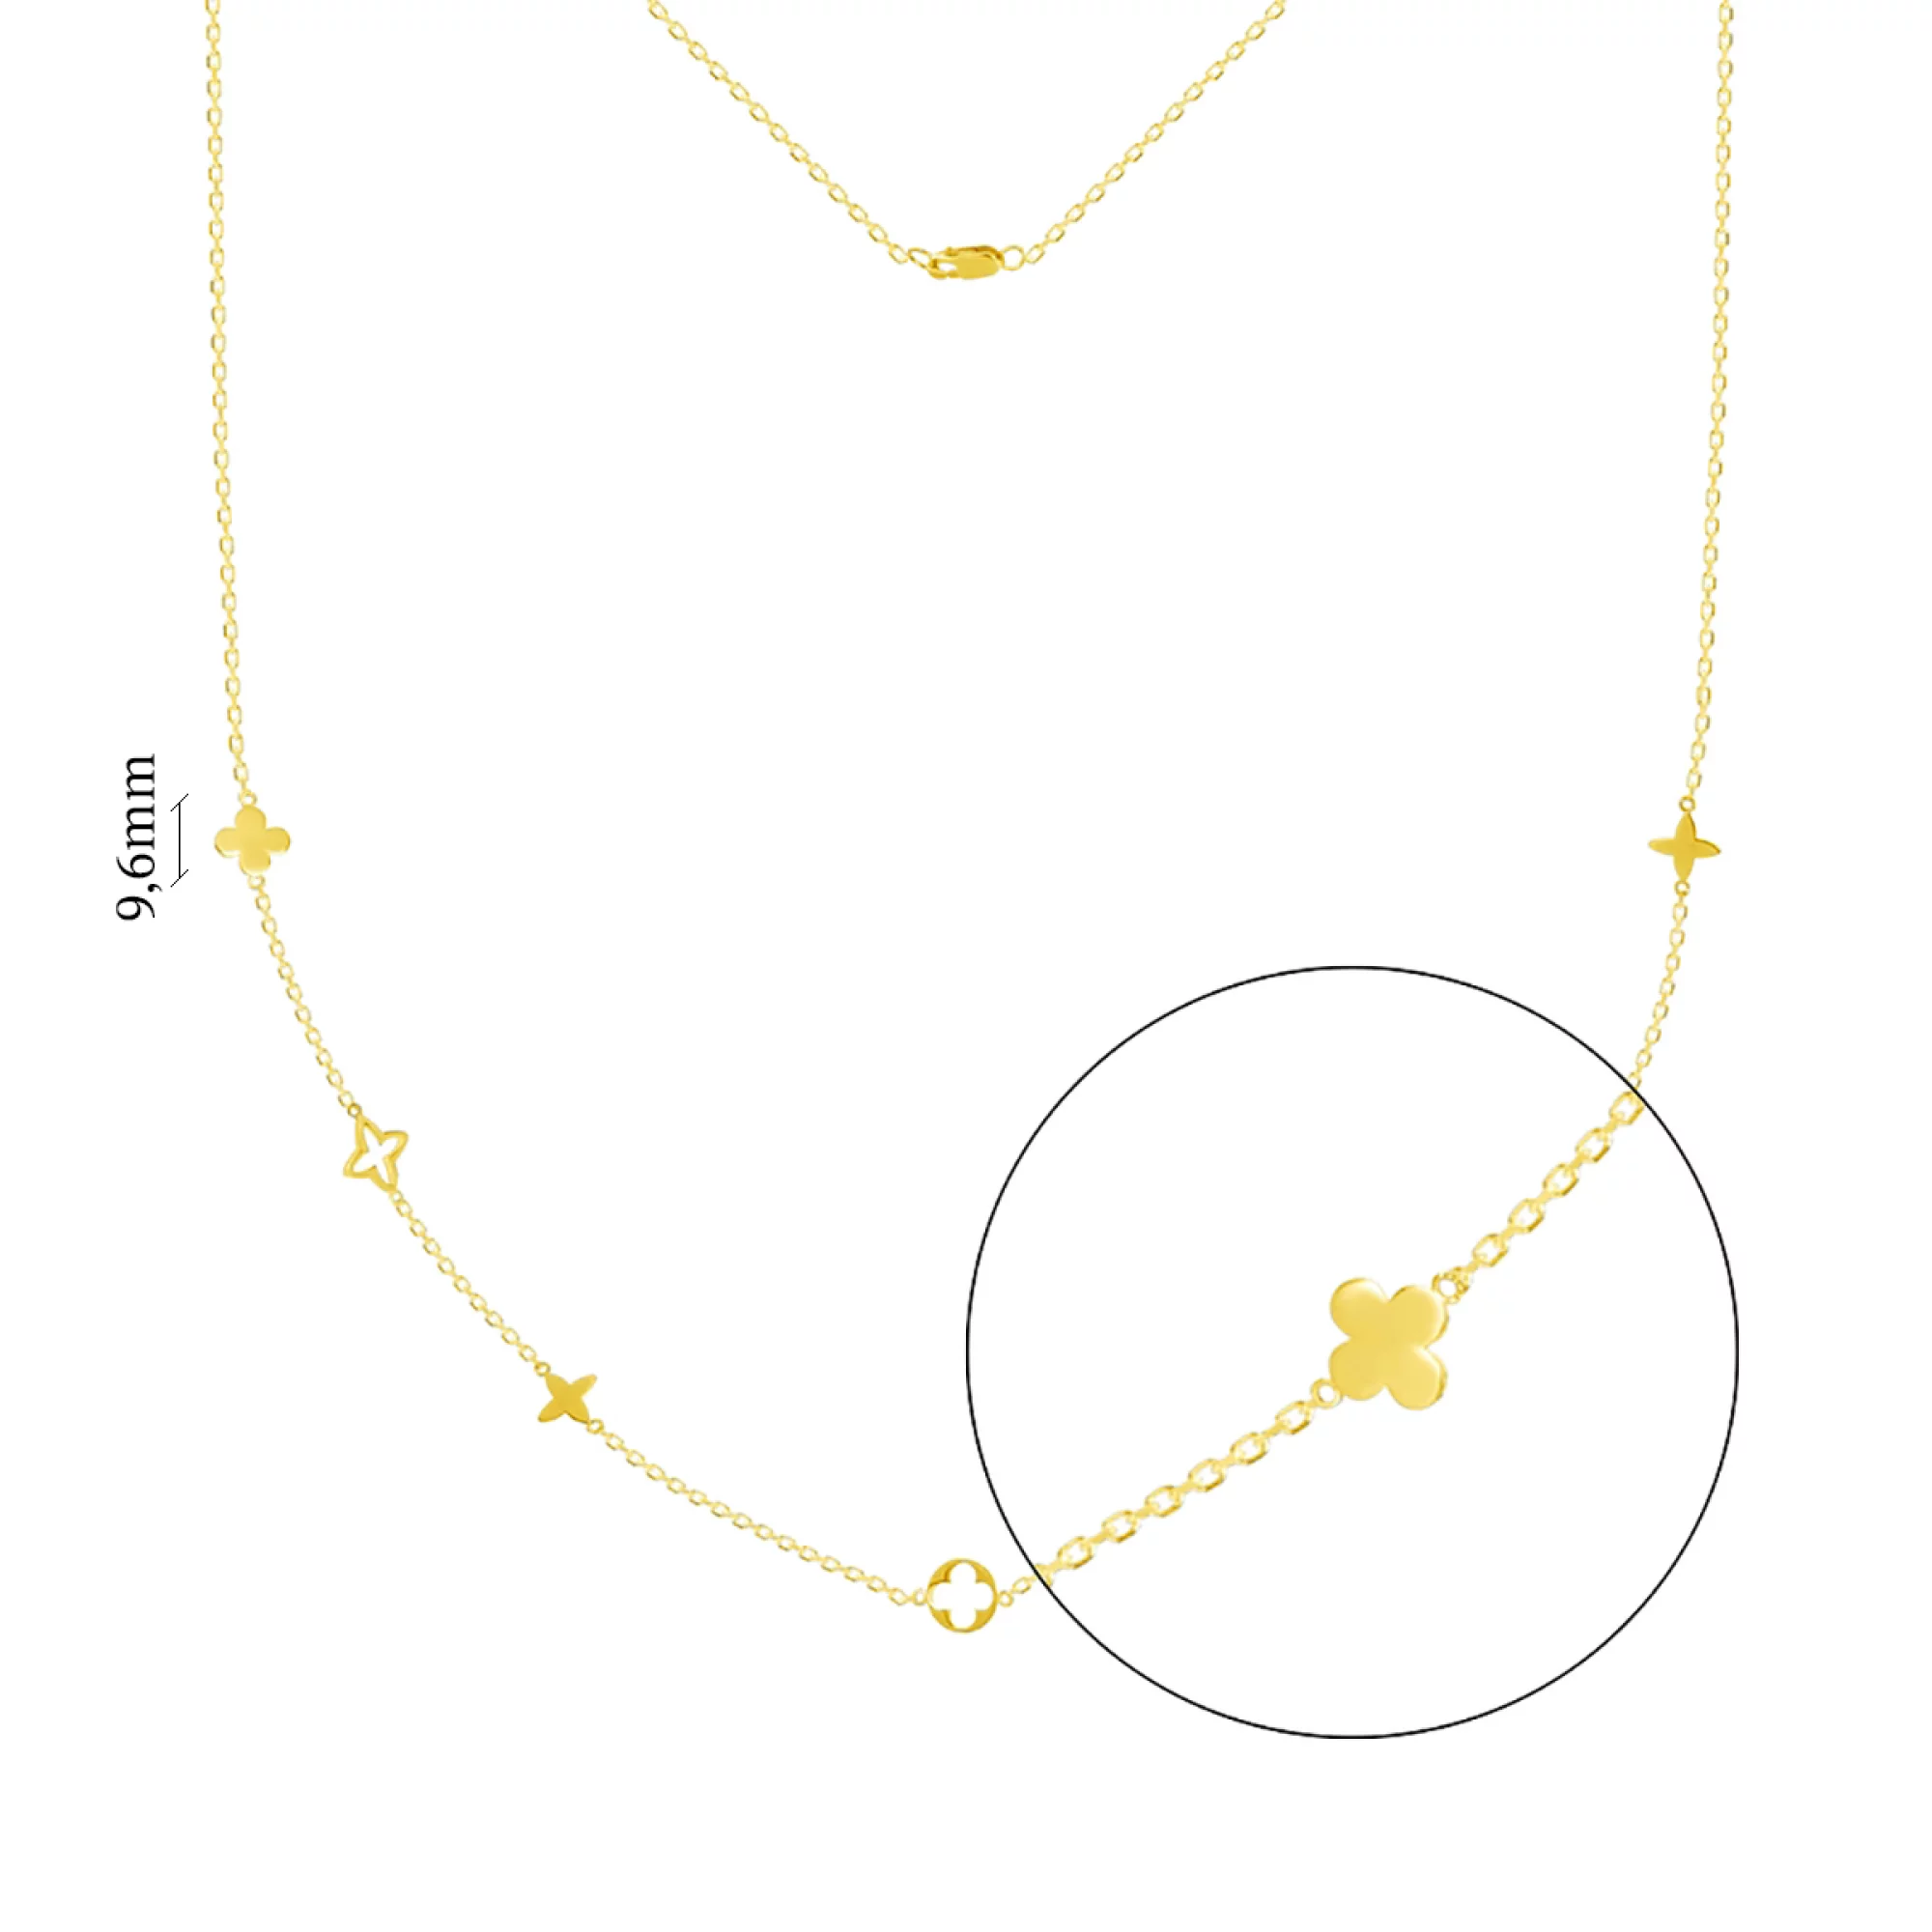 Колье из лимонного золота в Якорном плетении - 1095011 – изображение 2